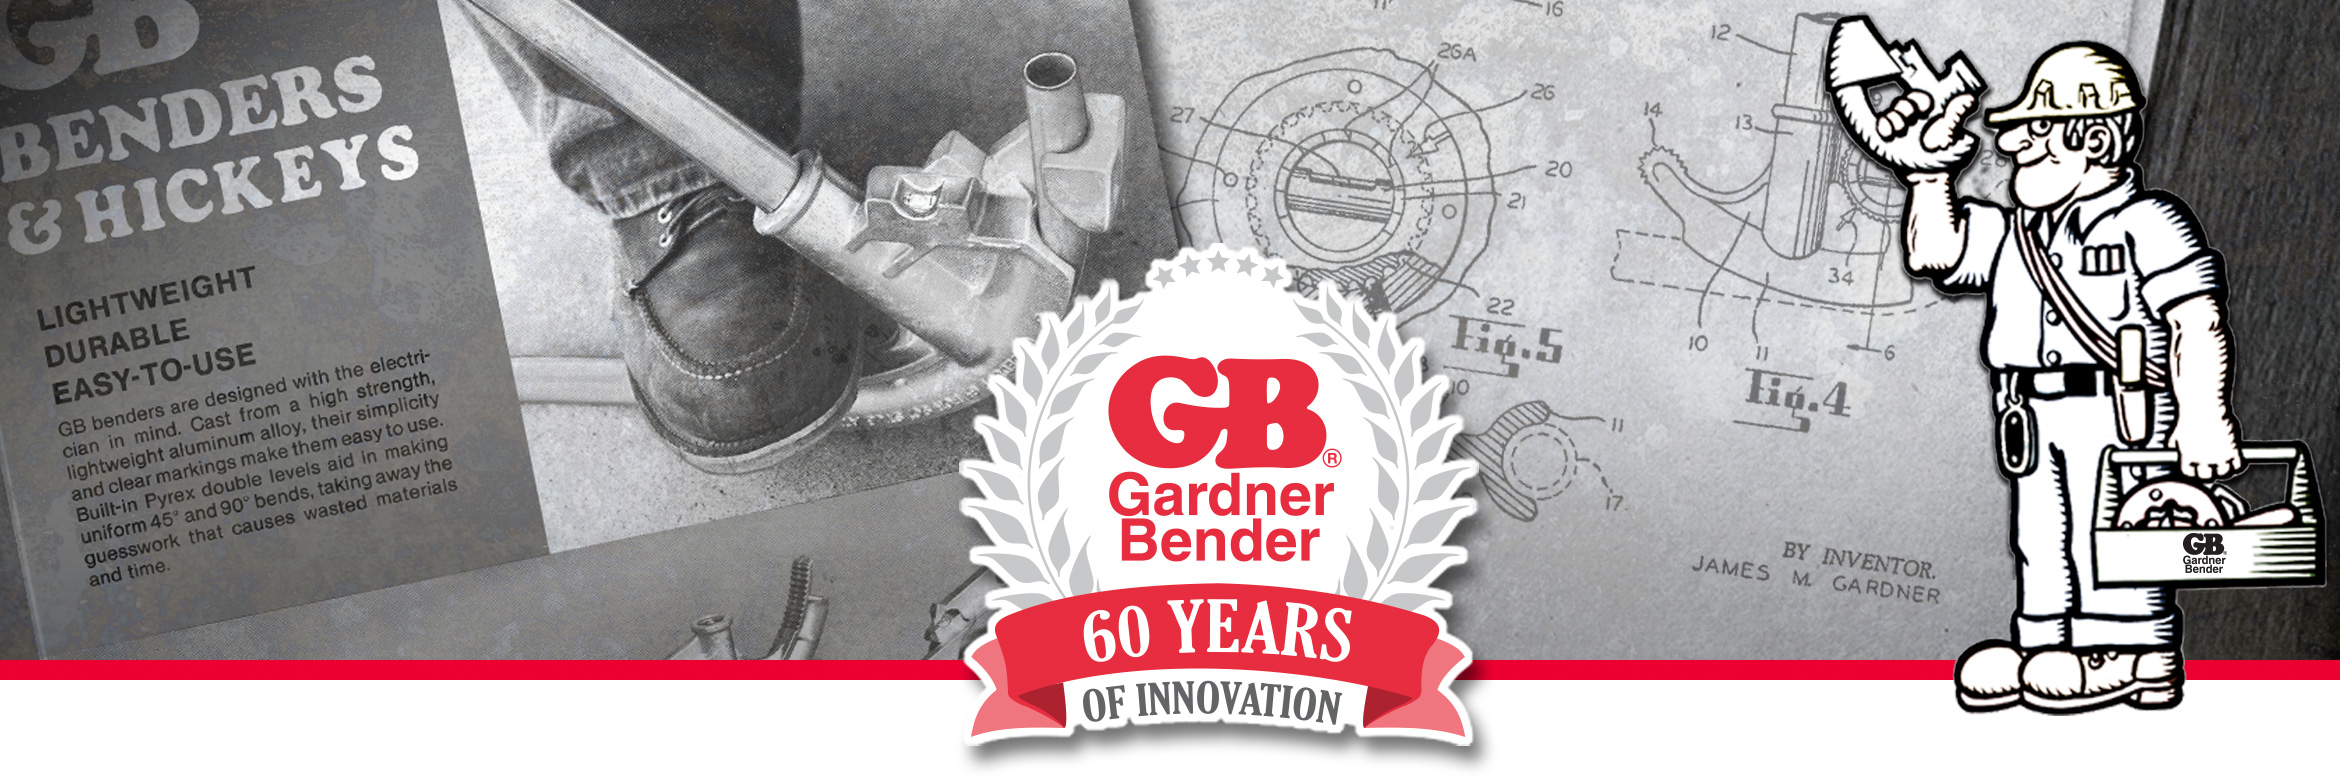 Gardner bender Celebrating 60 years of Innovation!